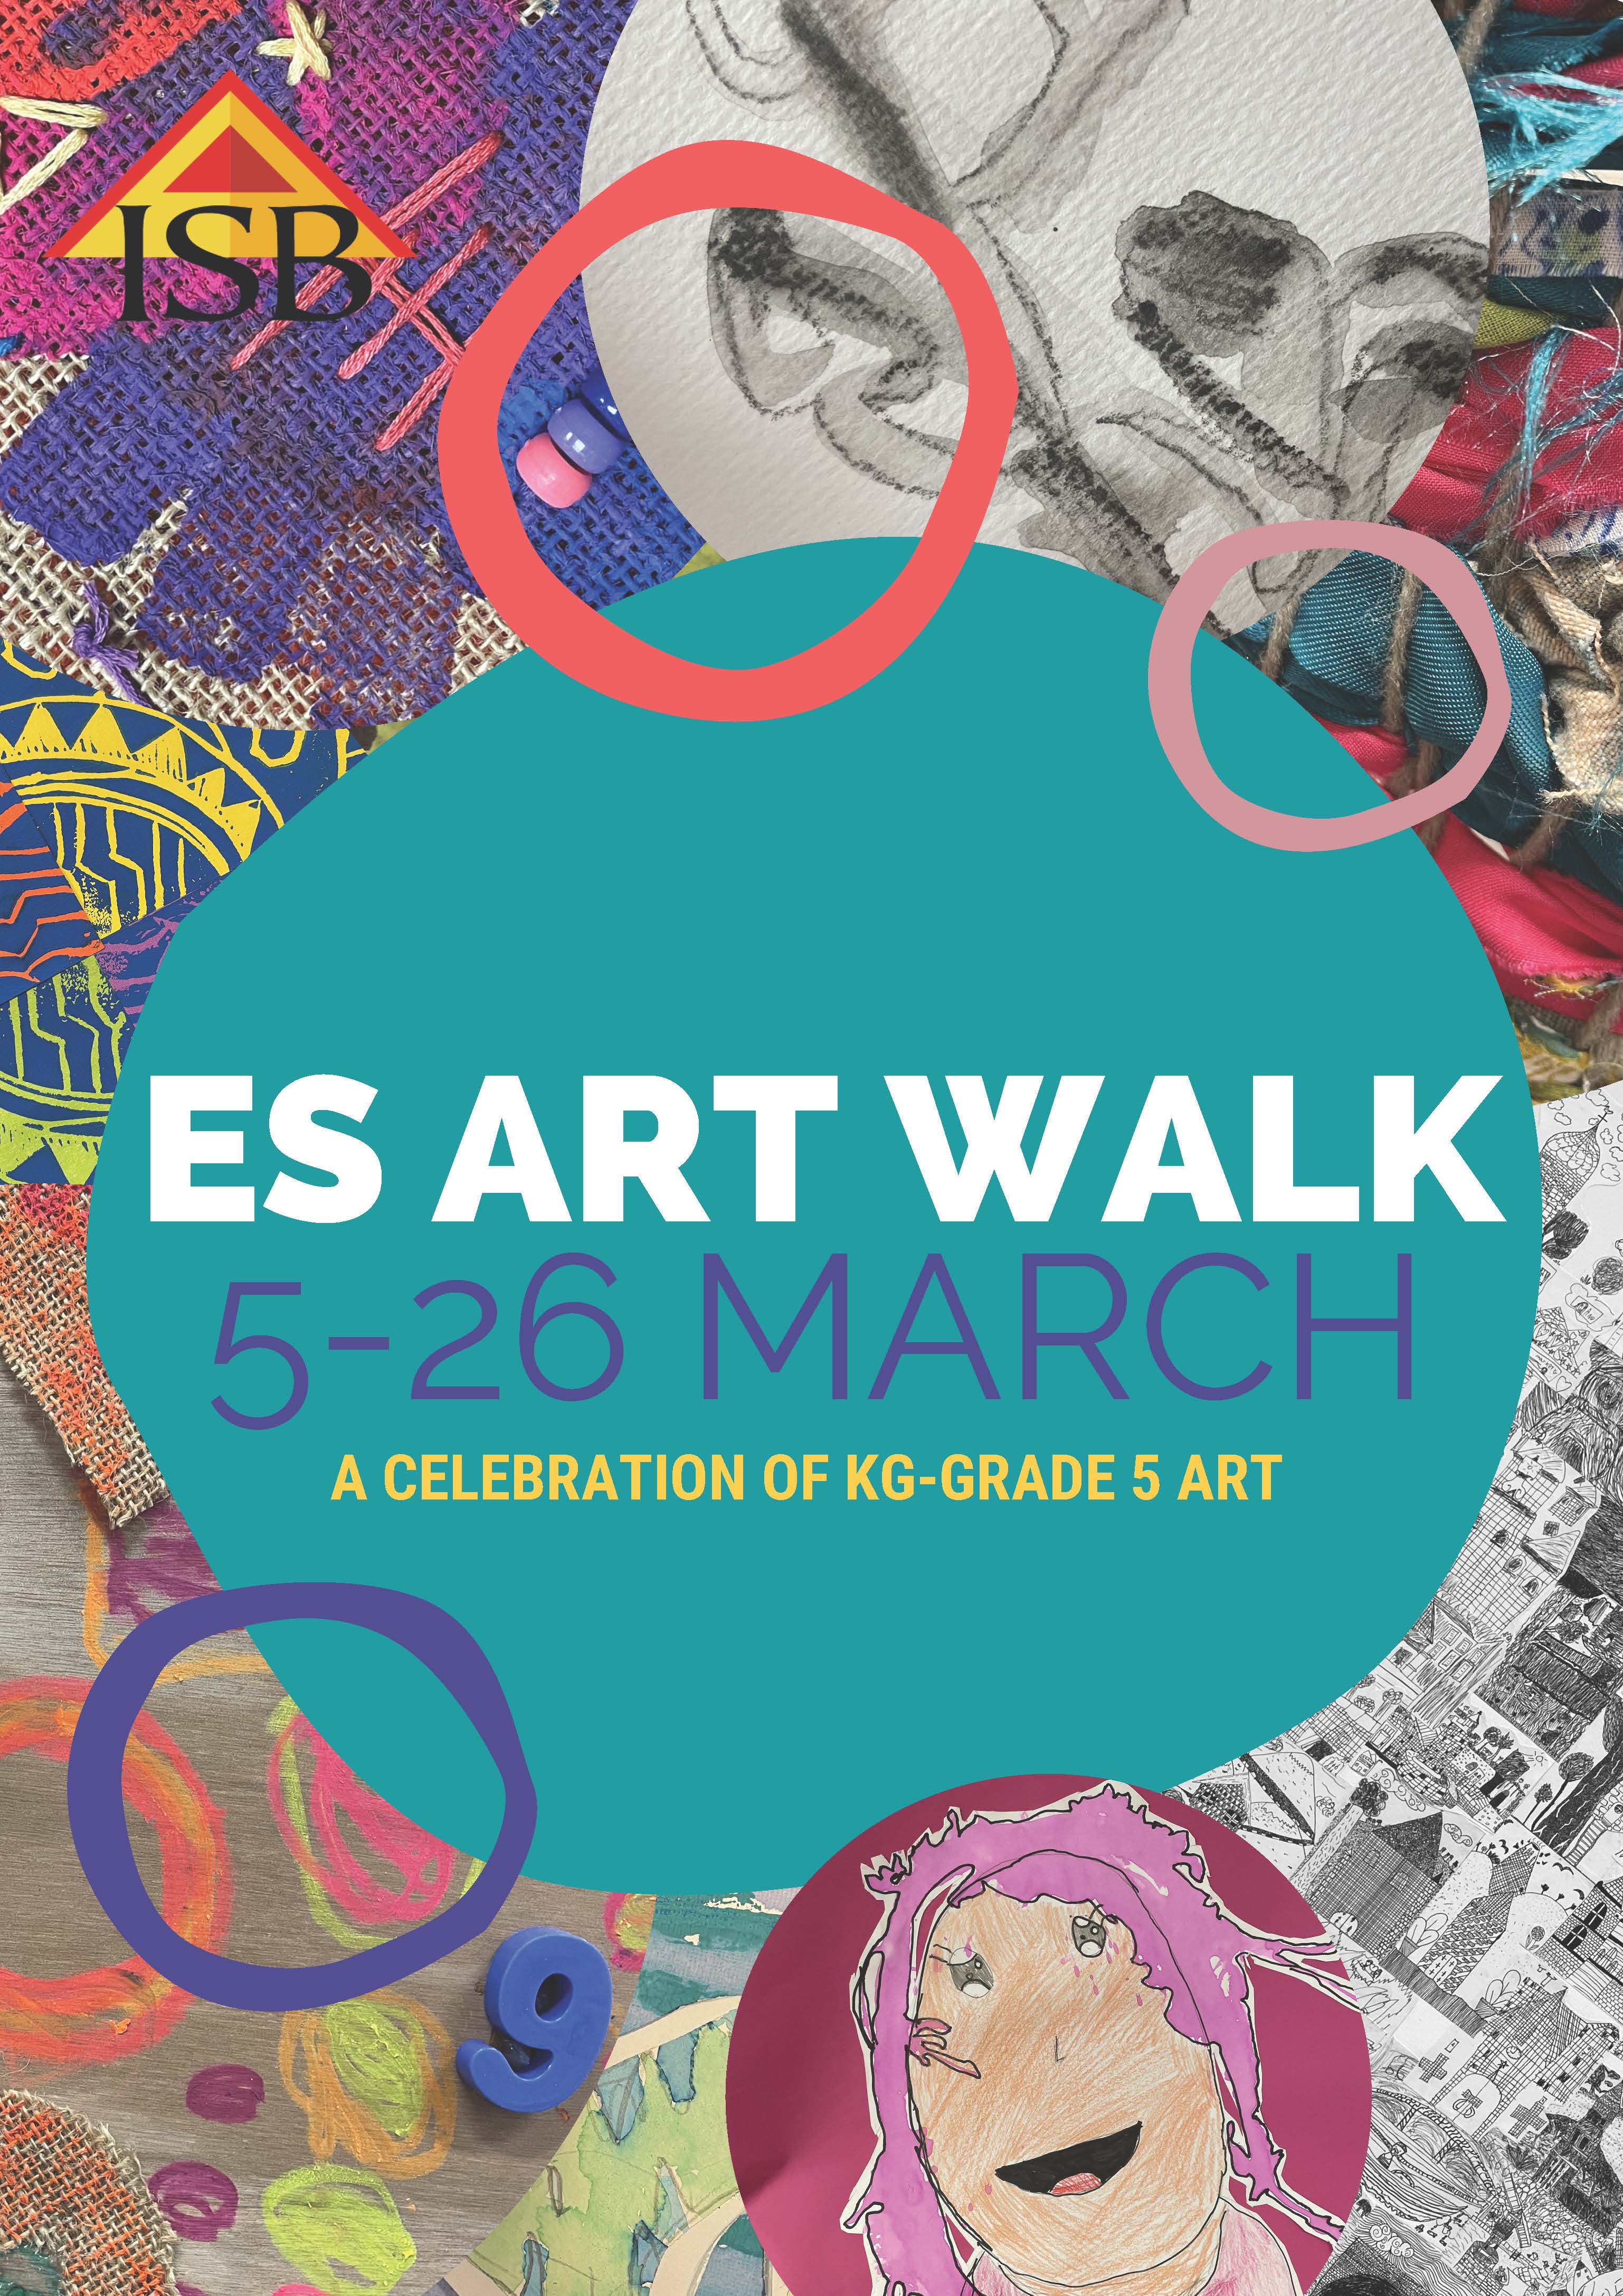 ES Art Walk Open Until March 26